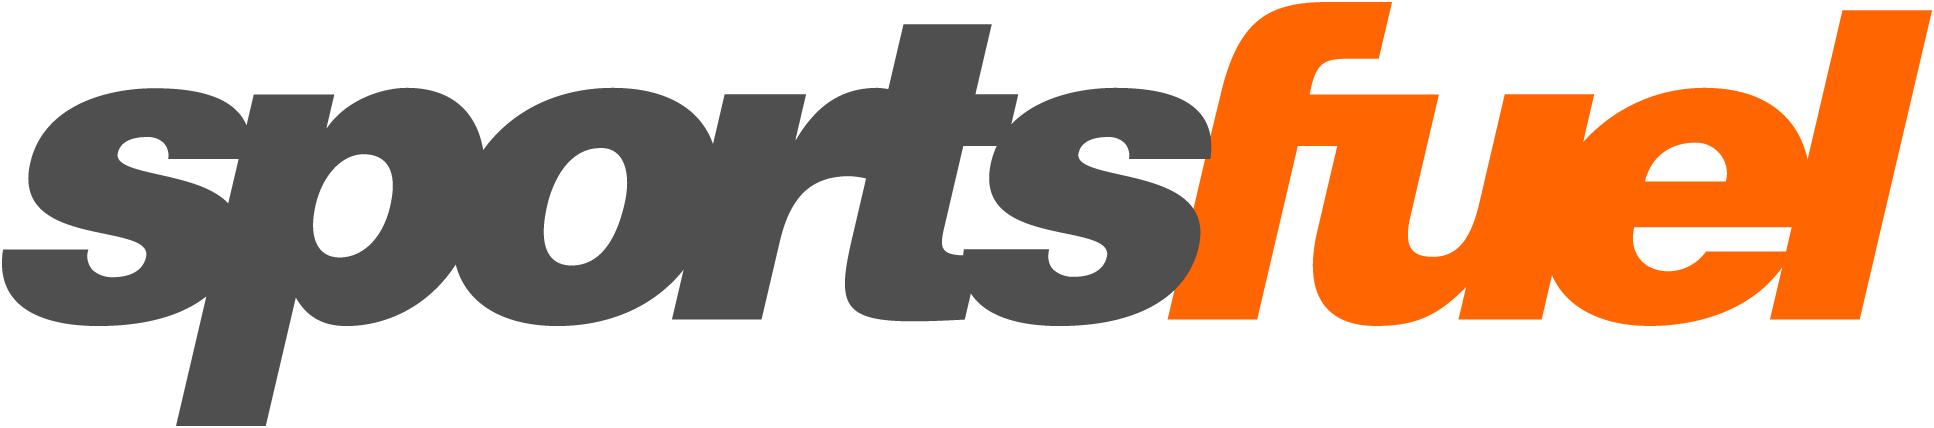 Sportsfuel logo